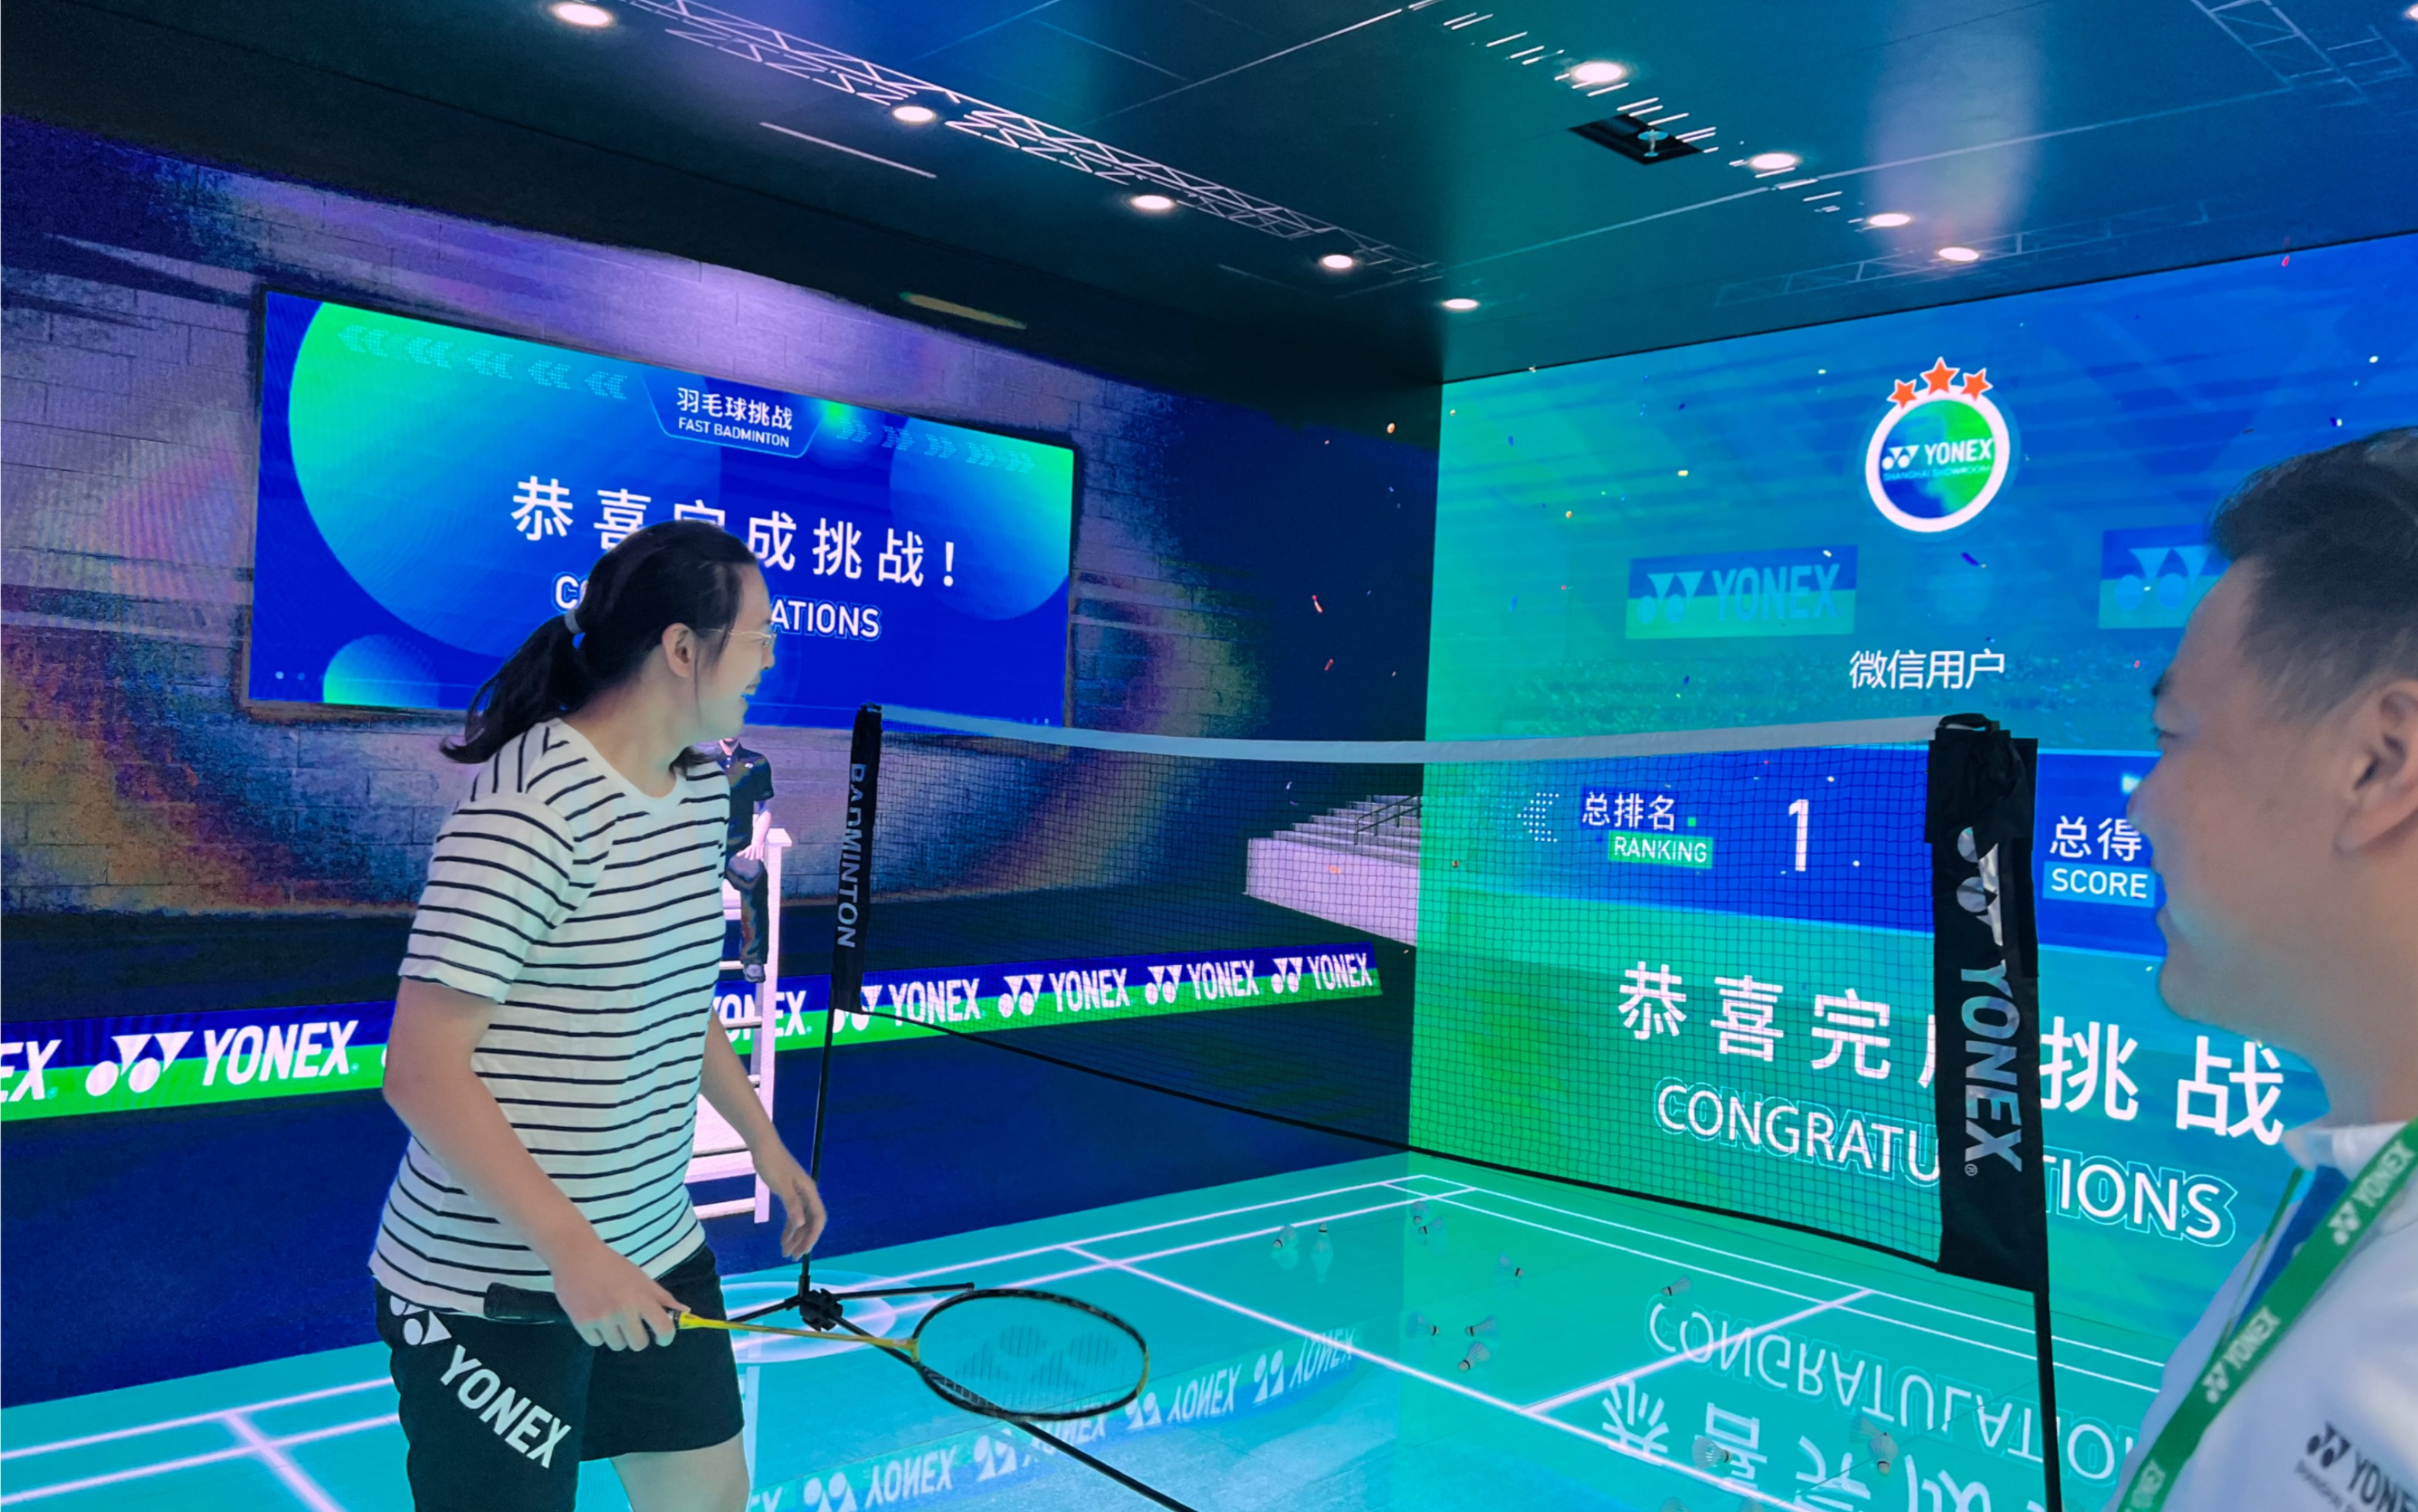 尤尼克斯上海旗舰店开业拿下400分的某不知名羽毛球爱好者